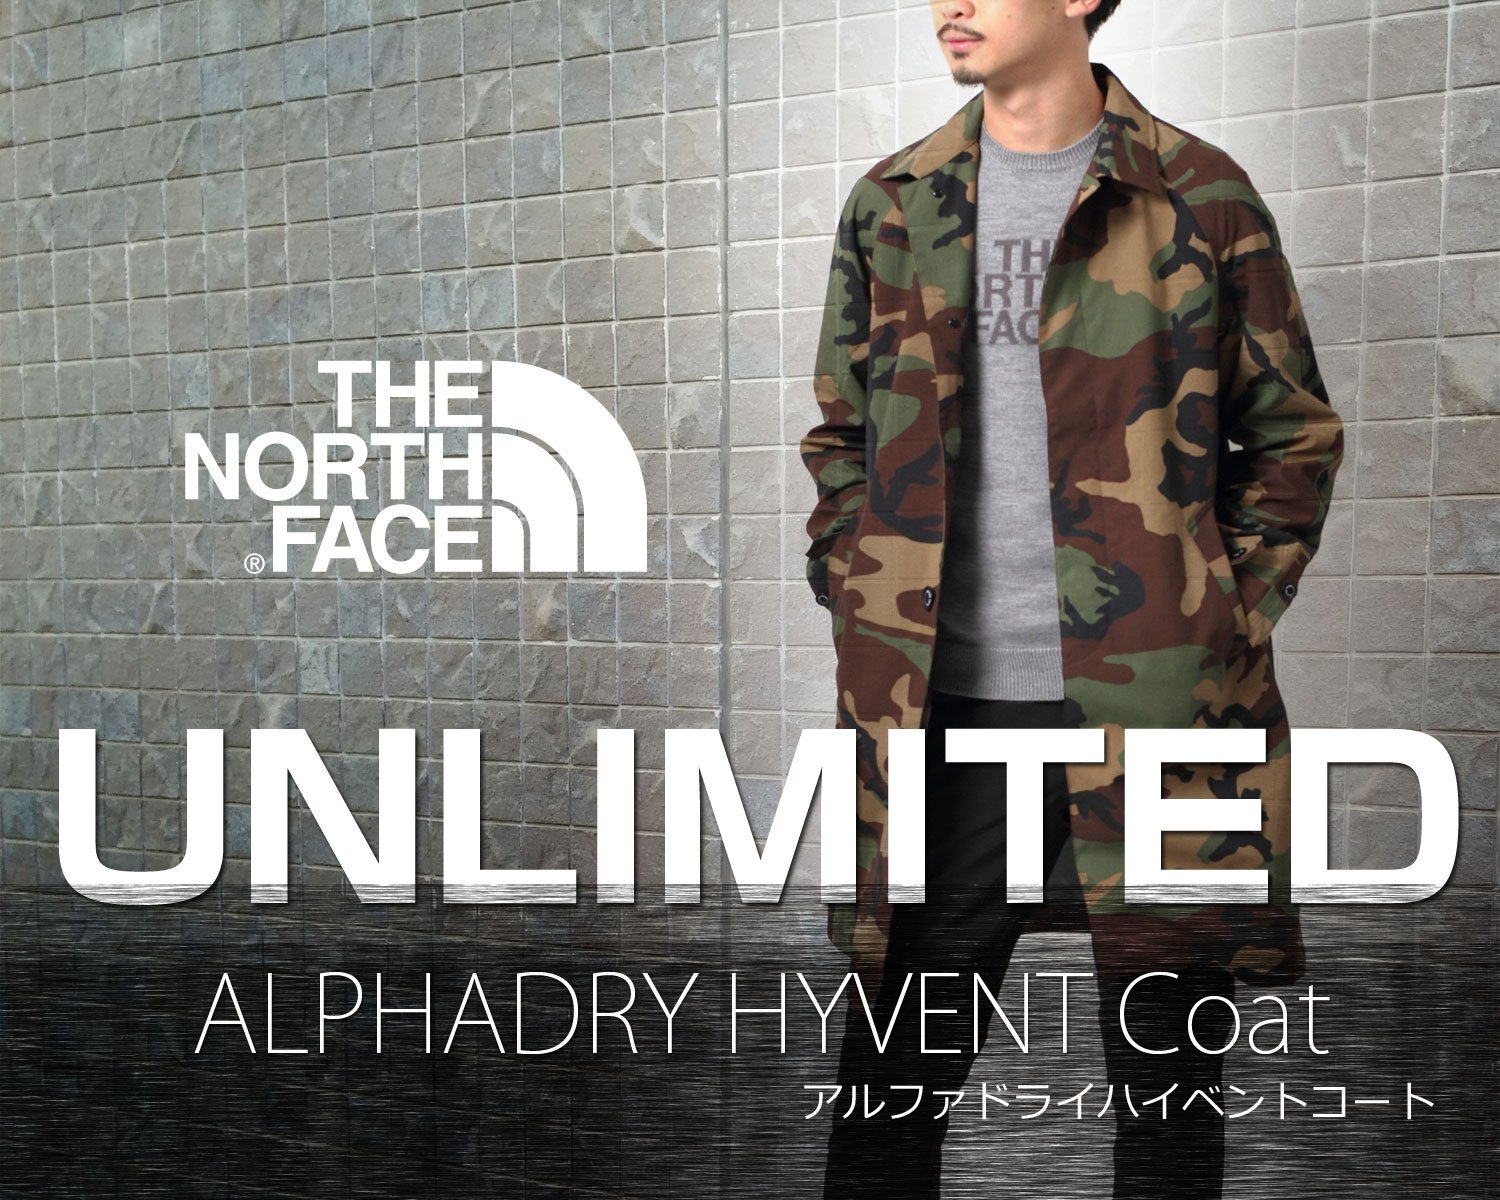 THE NORTH FACE(ザ・ノース・フェイス) AD HYVENT COAT(アルファドライ ...